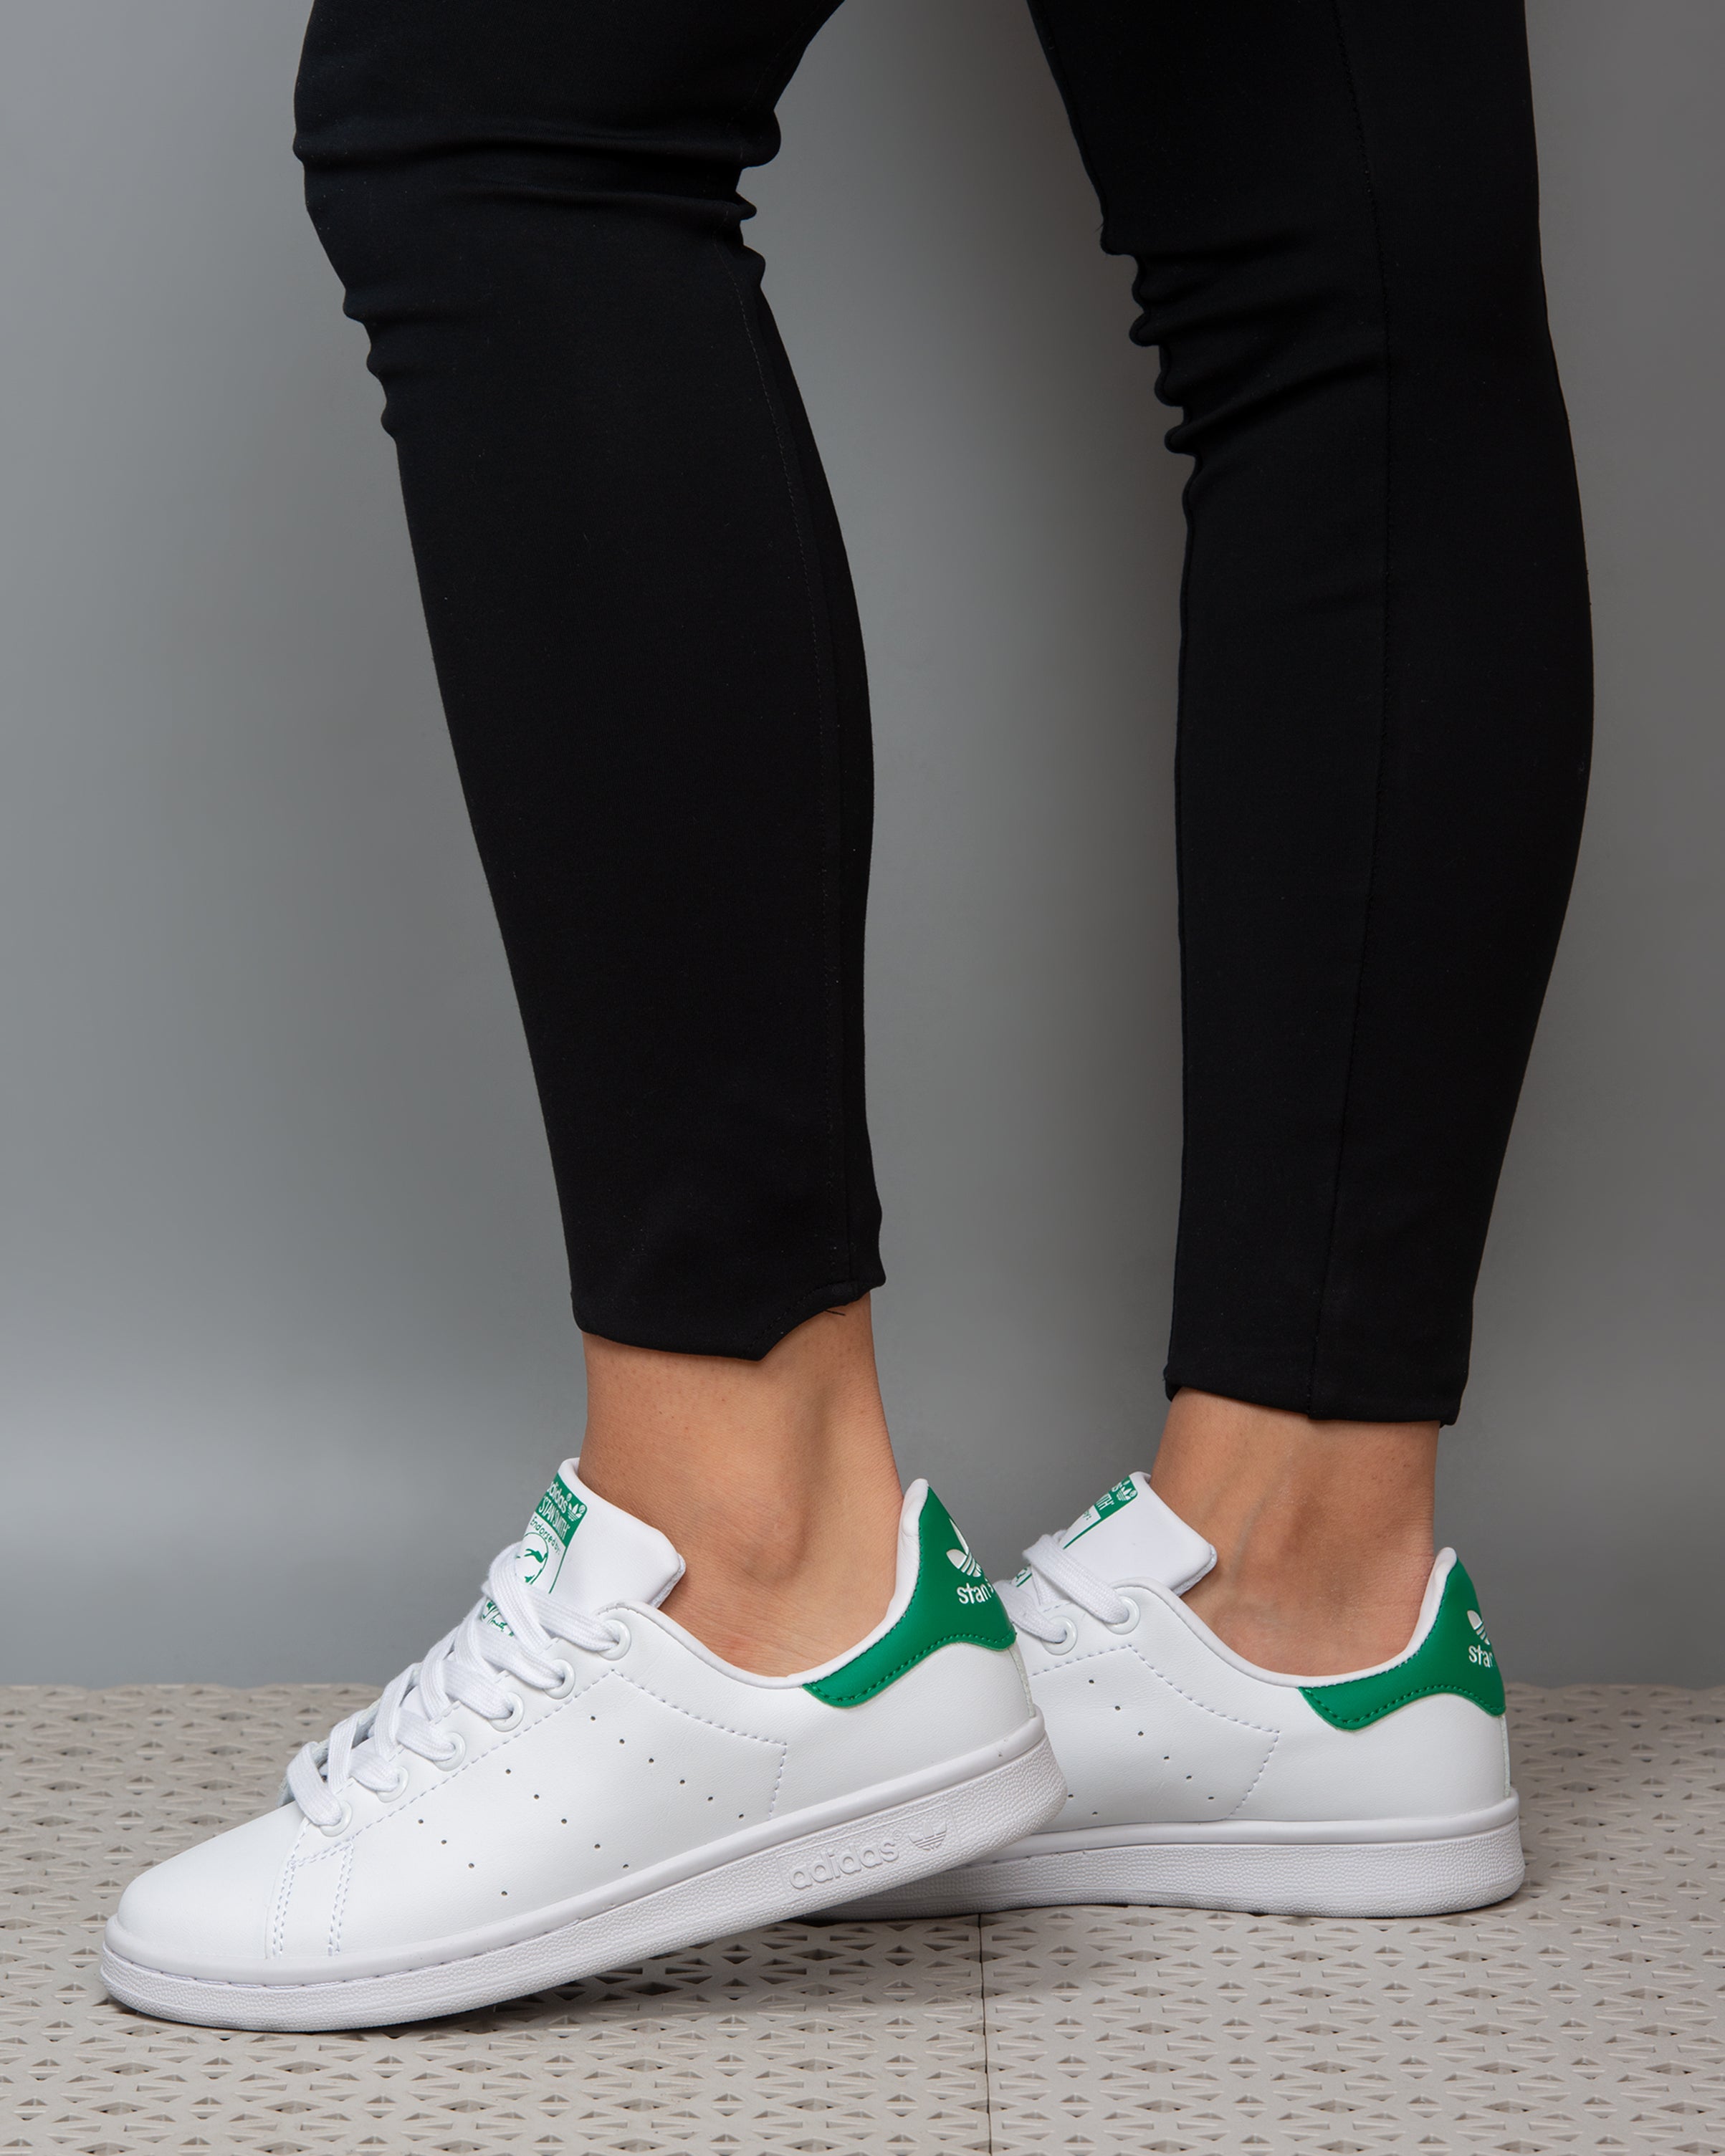 Adidas stansmith White/Green